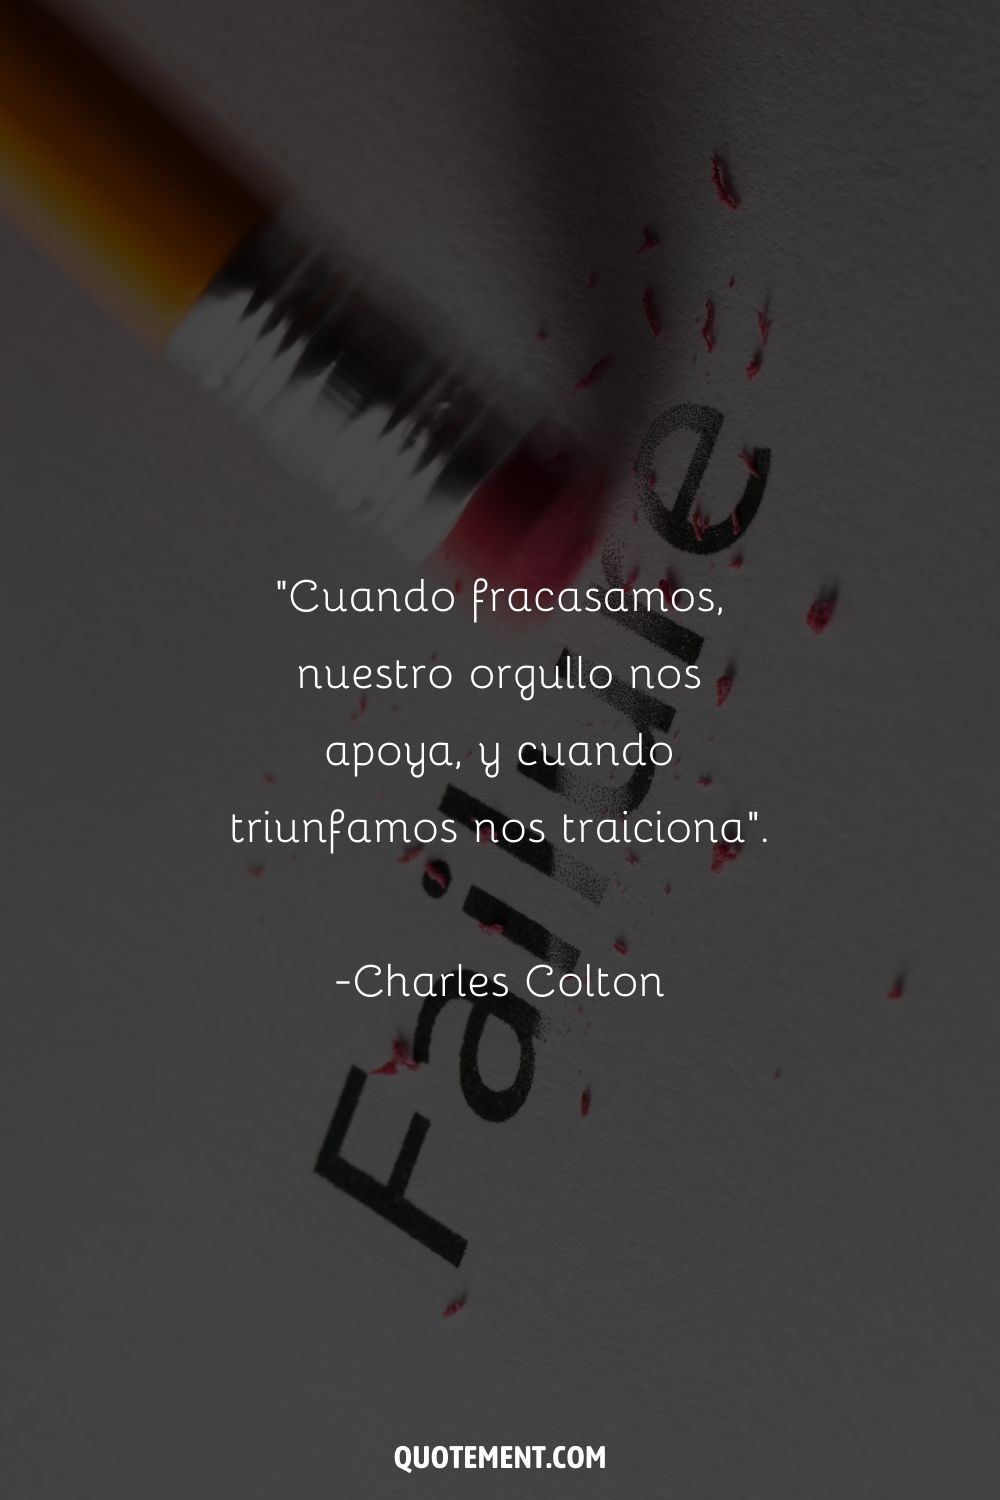 "Cuando fracasamos, nuestro orgullo nos apoya, y cuando triunfamos nos traiciona". - Charles Colton